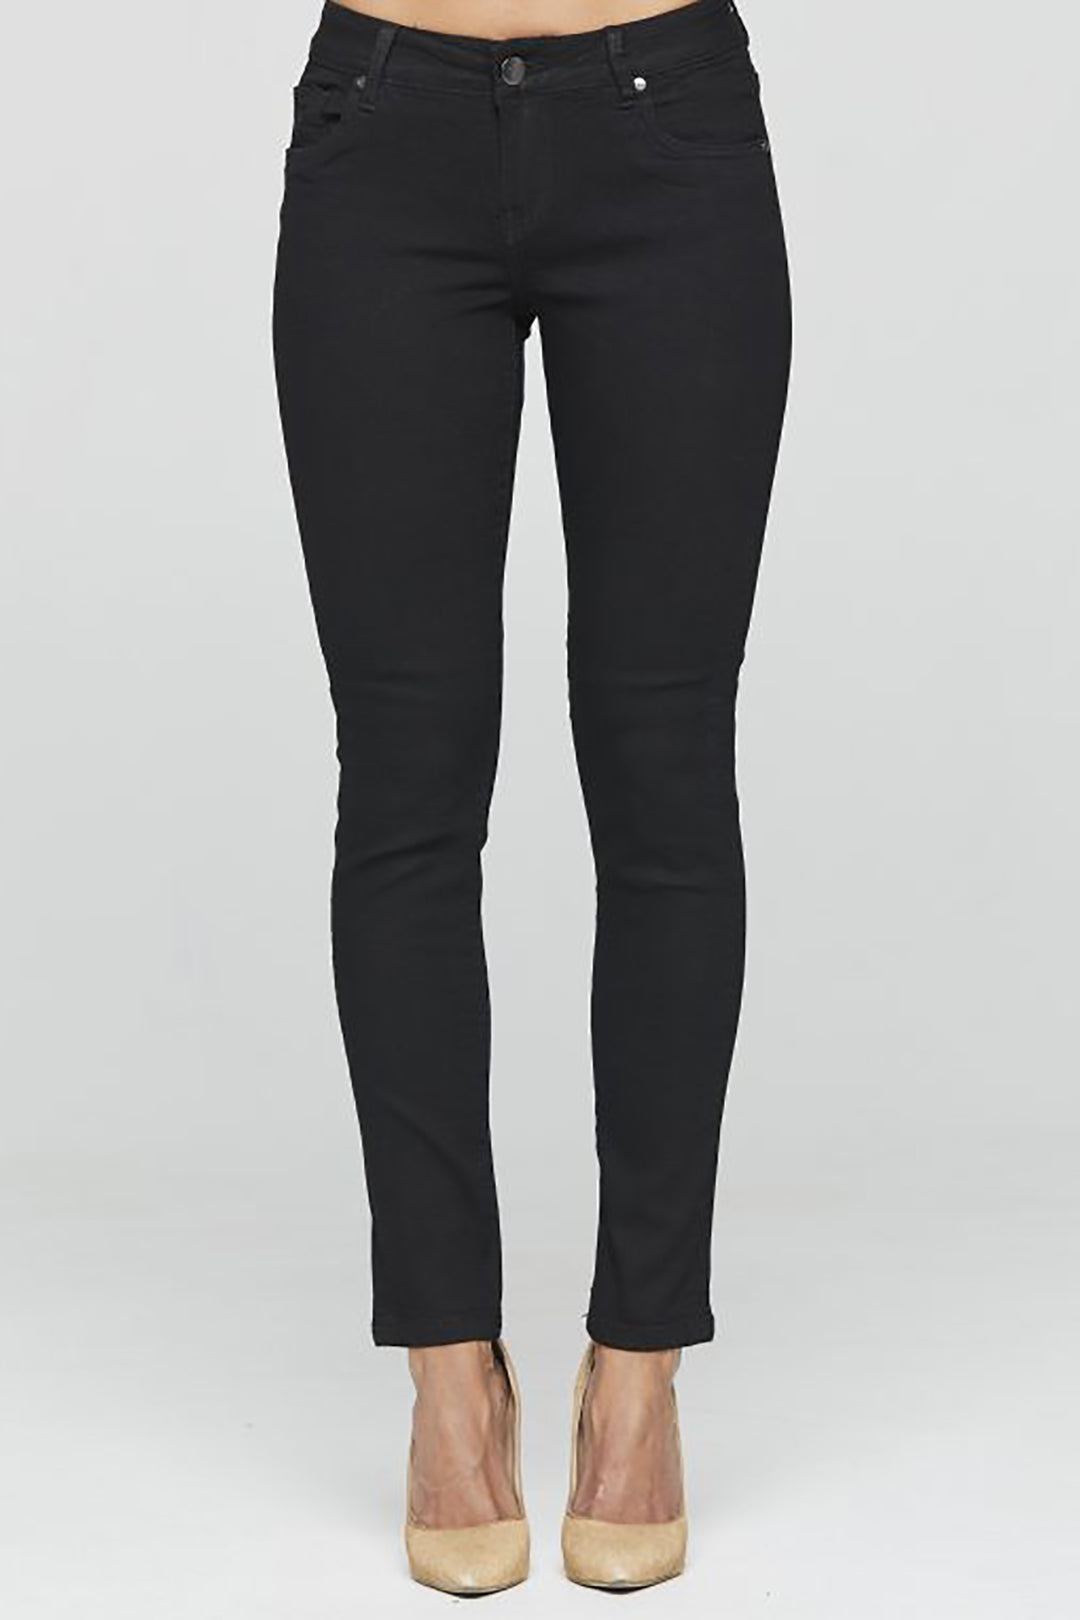 Olney Black Taper Jeans | NLJ16